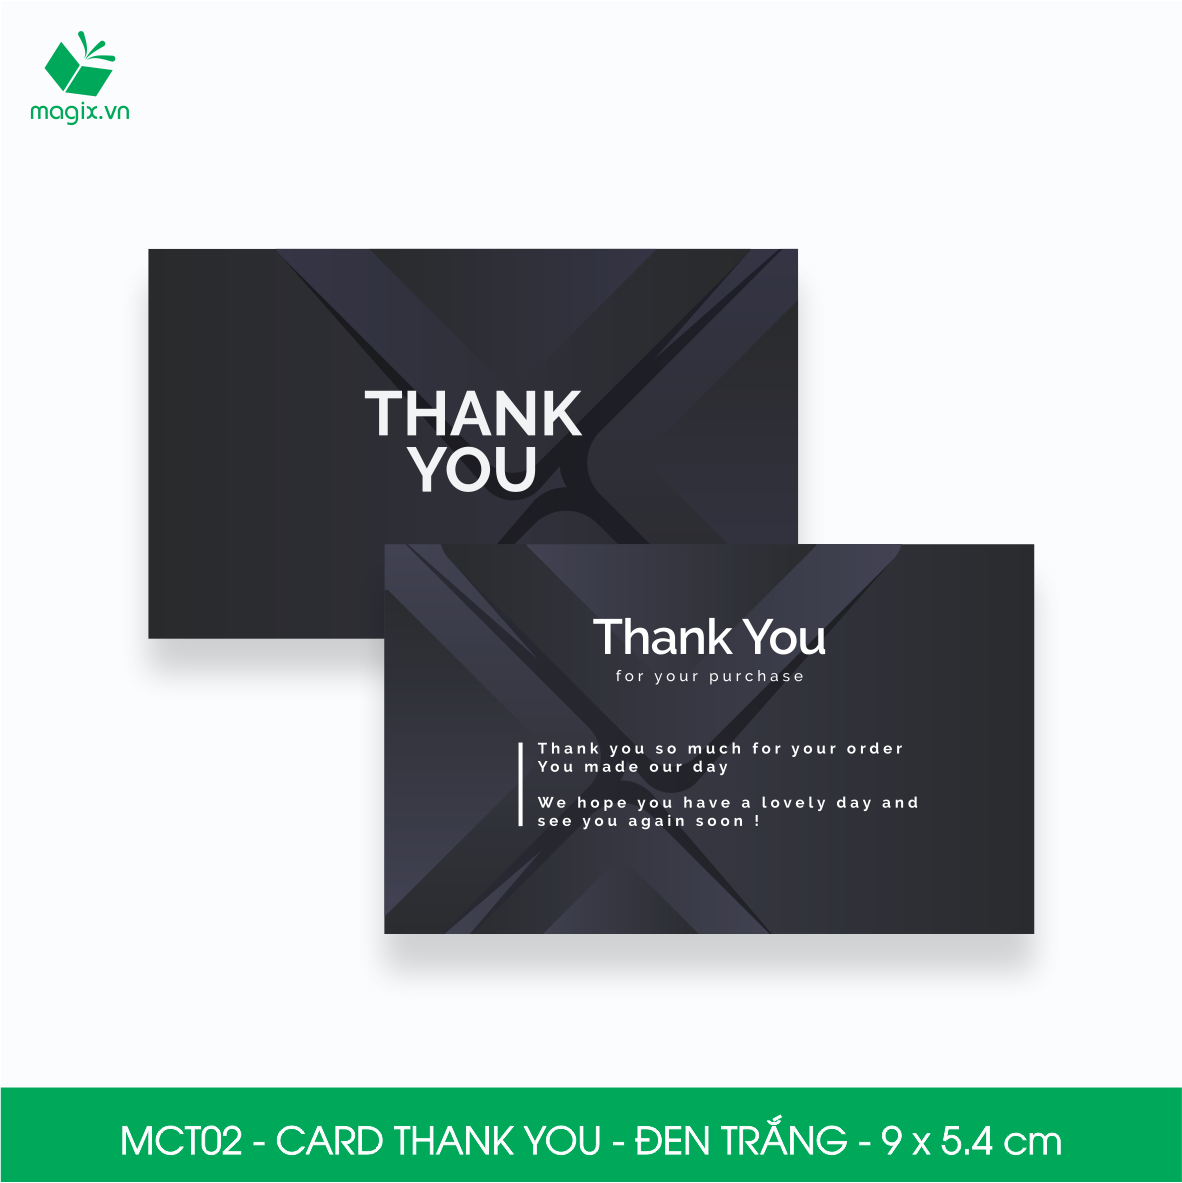 MCT02 - 9x5.4 cm - 1000 Card Thank you, Thiệp cảm ơn khách hàng, card cám ơn cứng cáp sang trọng